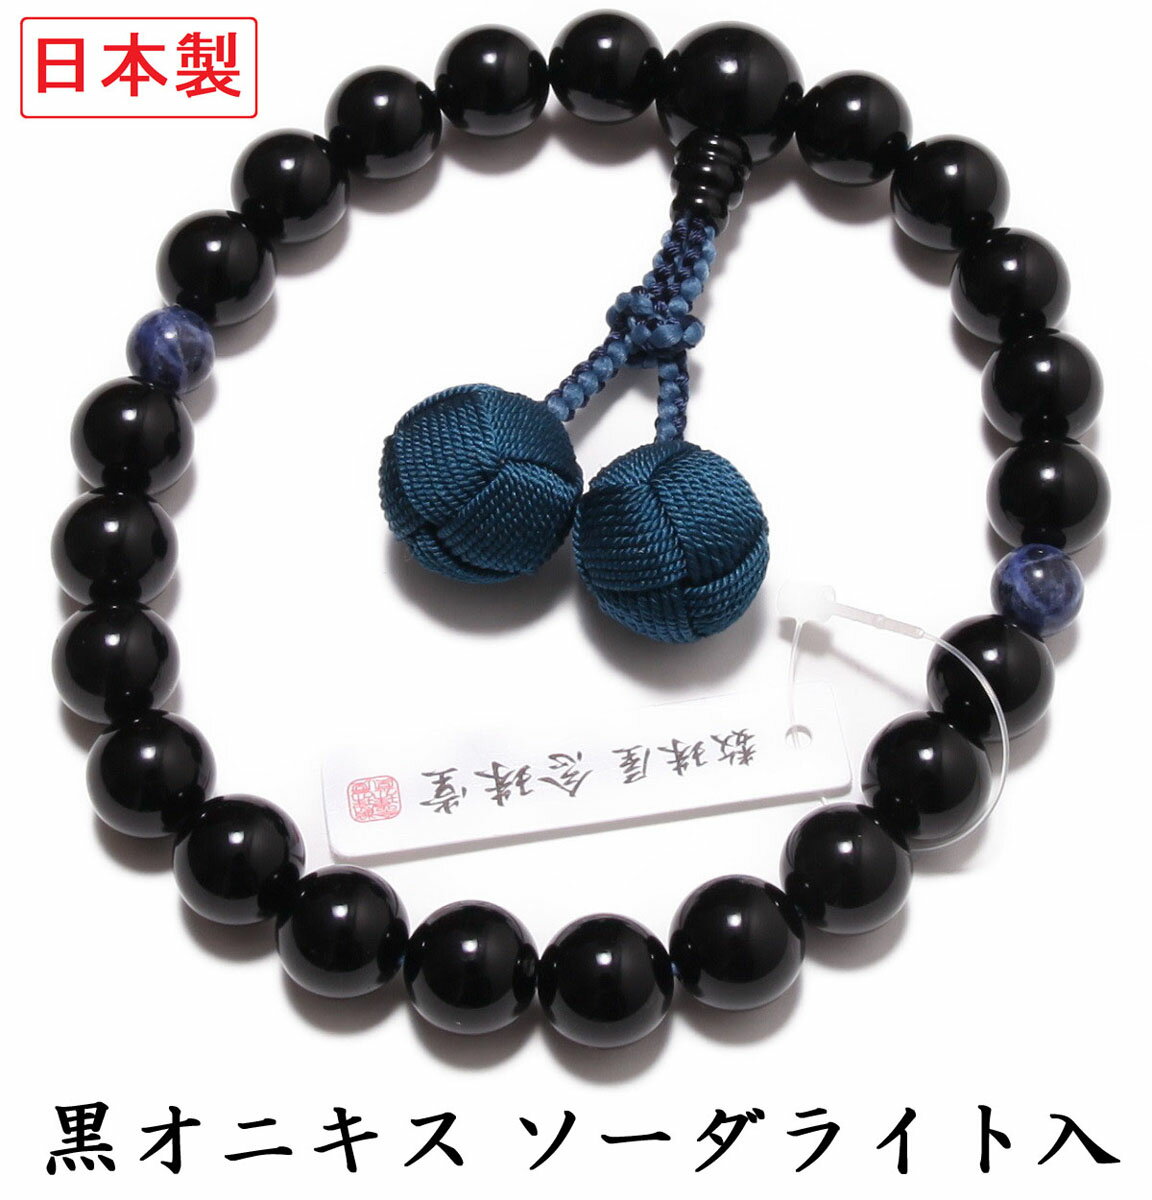 日本製 数珠 男性用 黒オニキス ソ